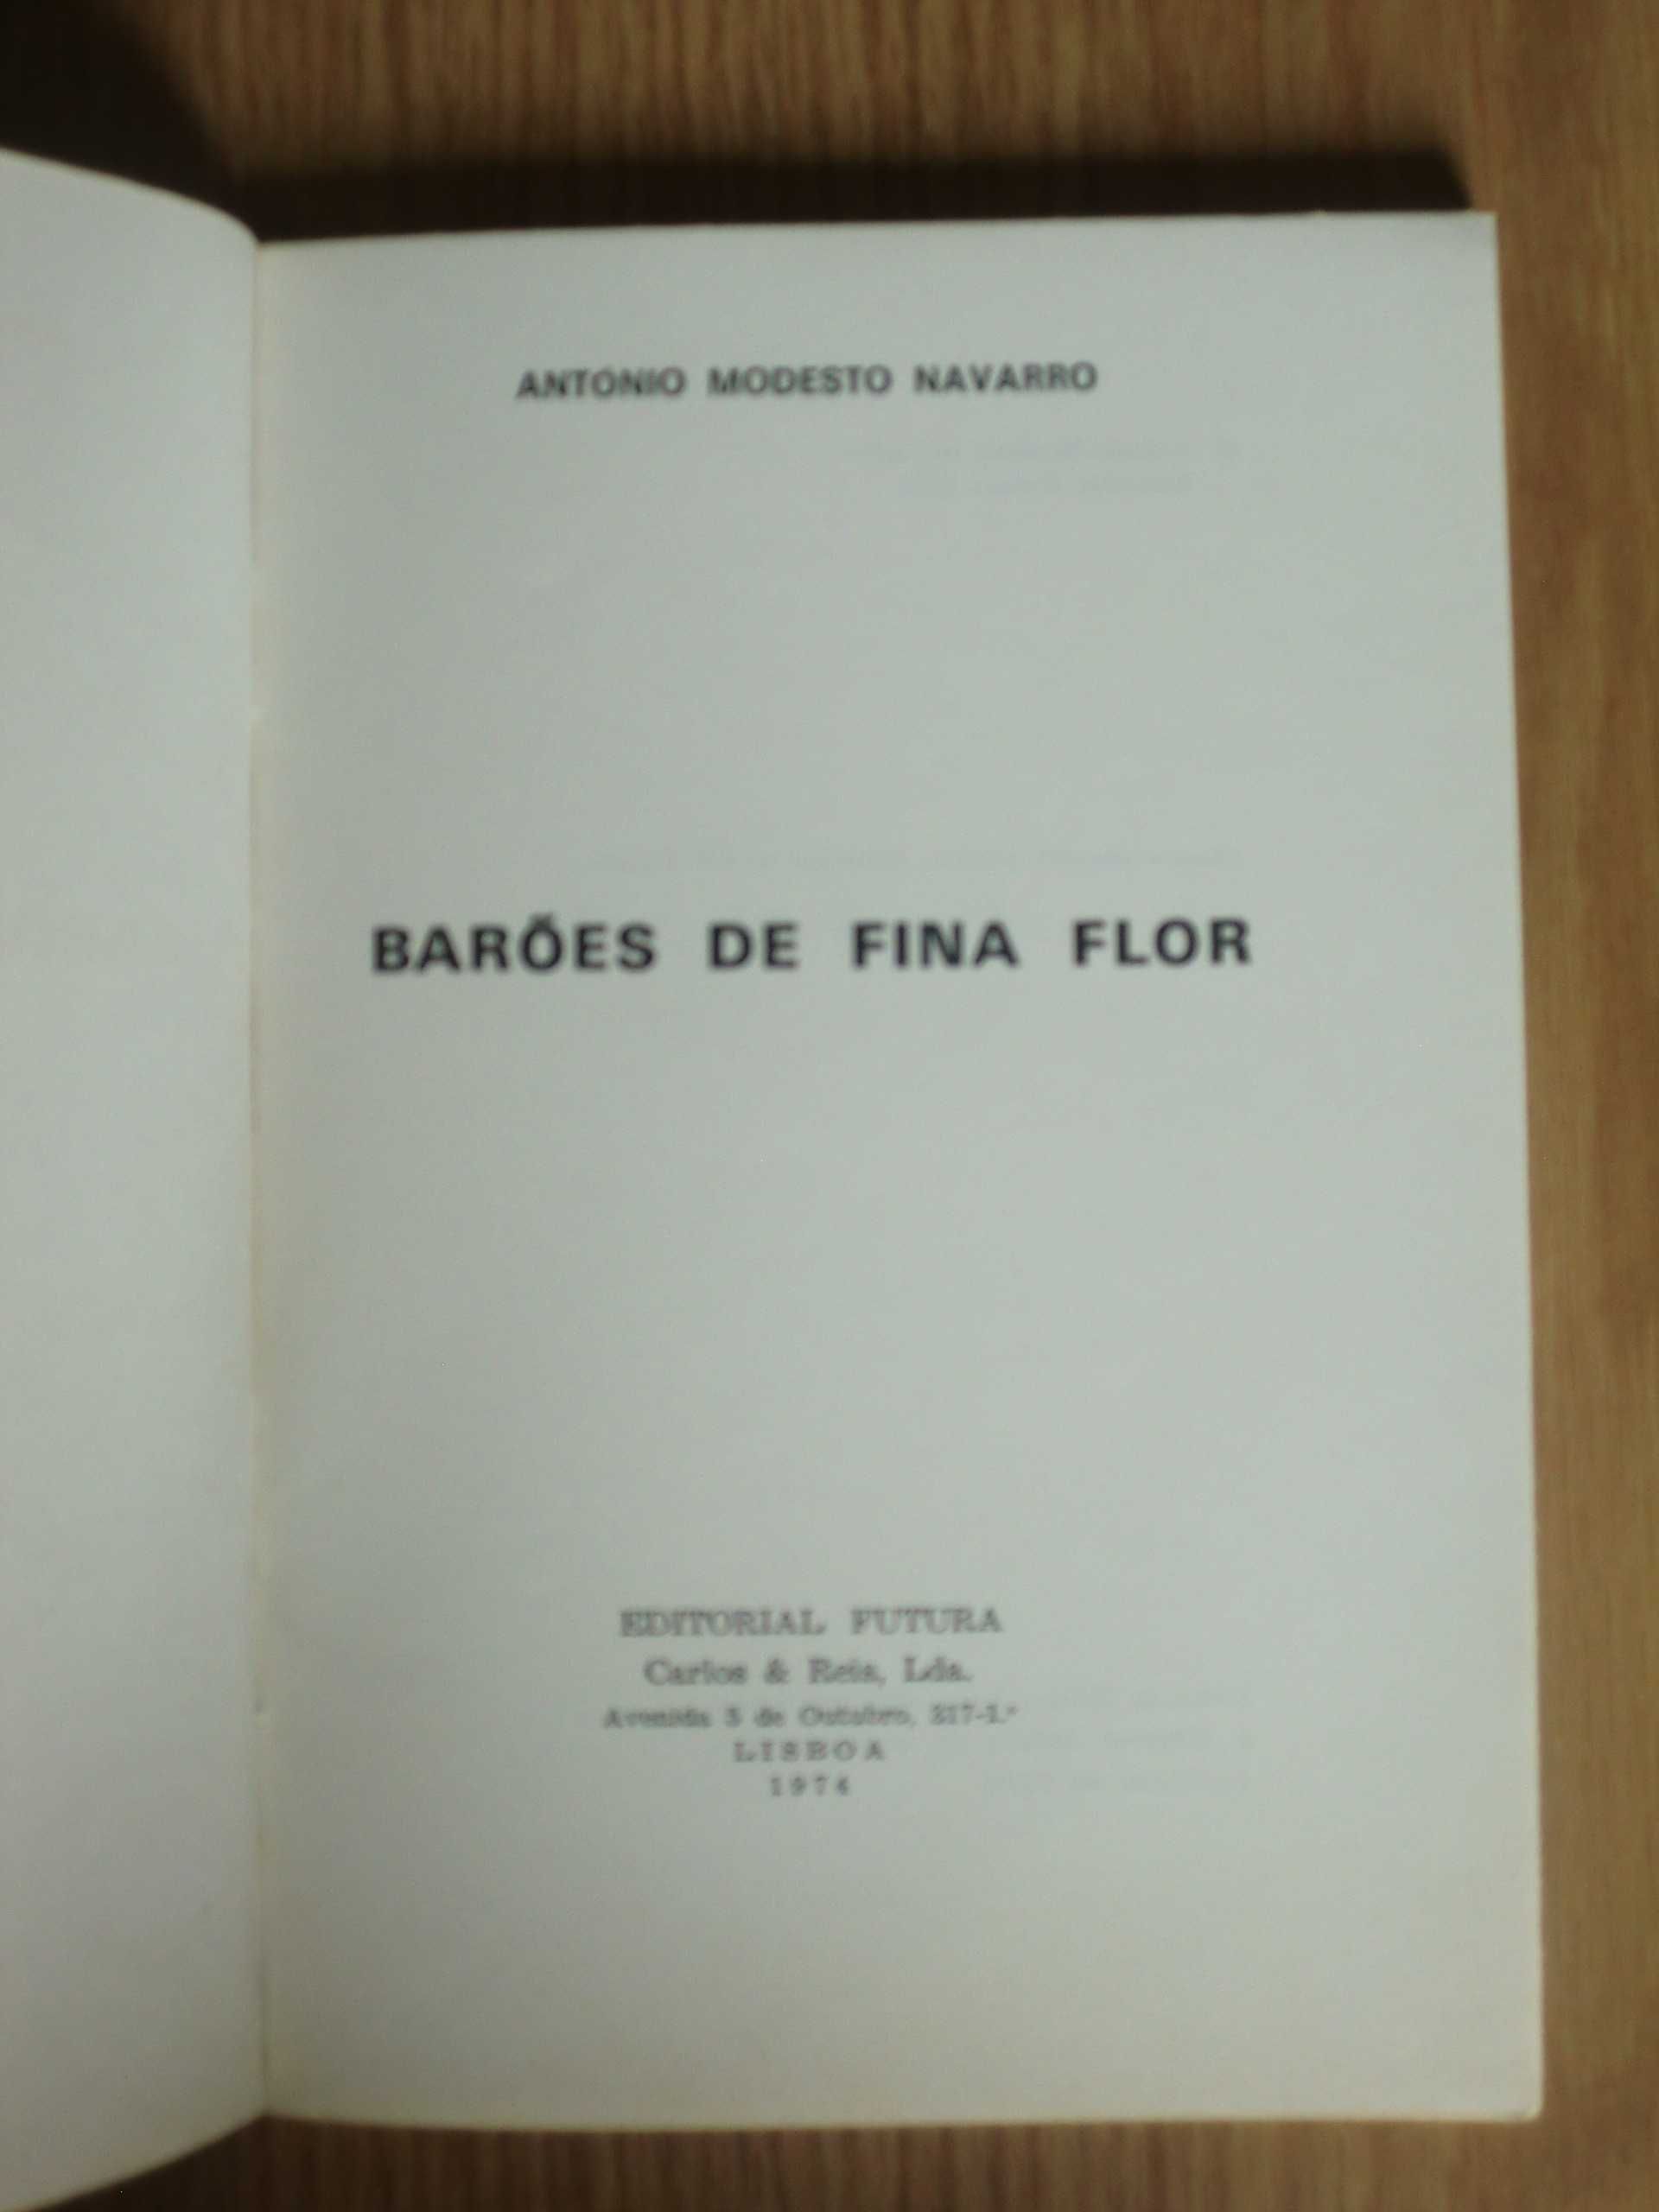 Barões de Fina Flor
de Modesto Navarro